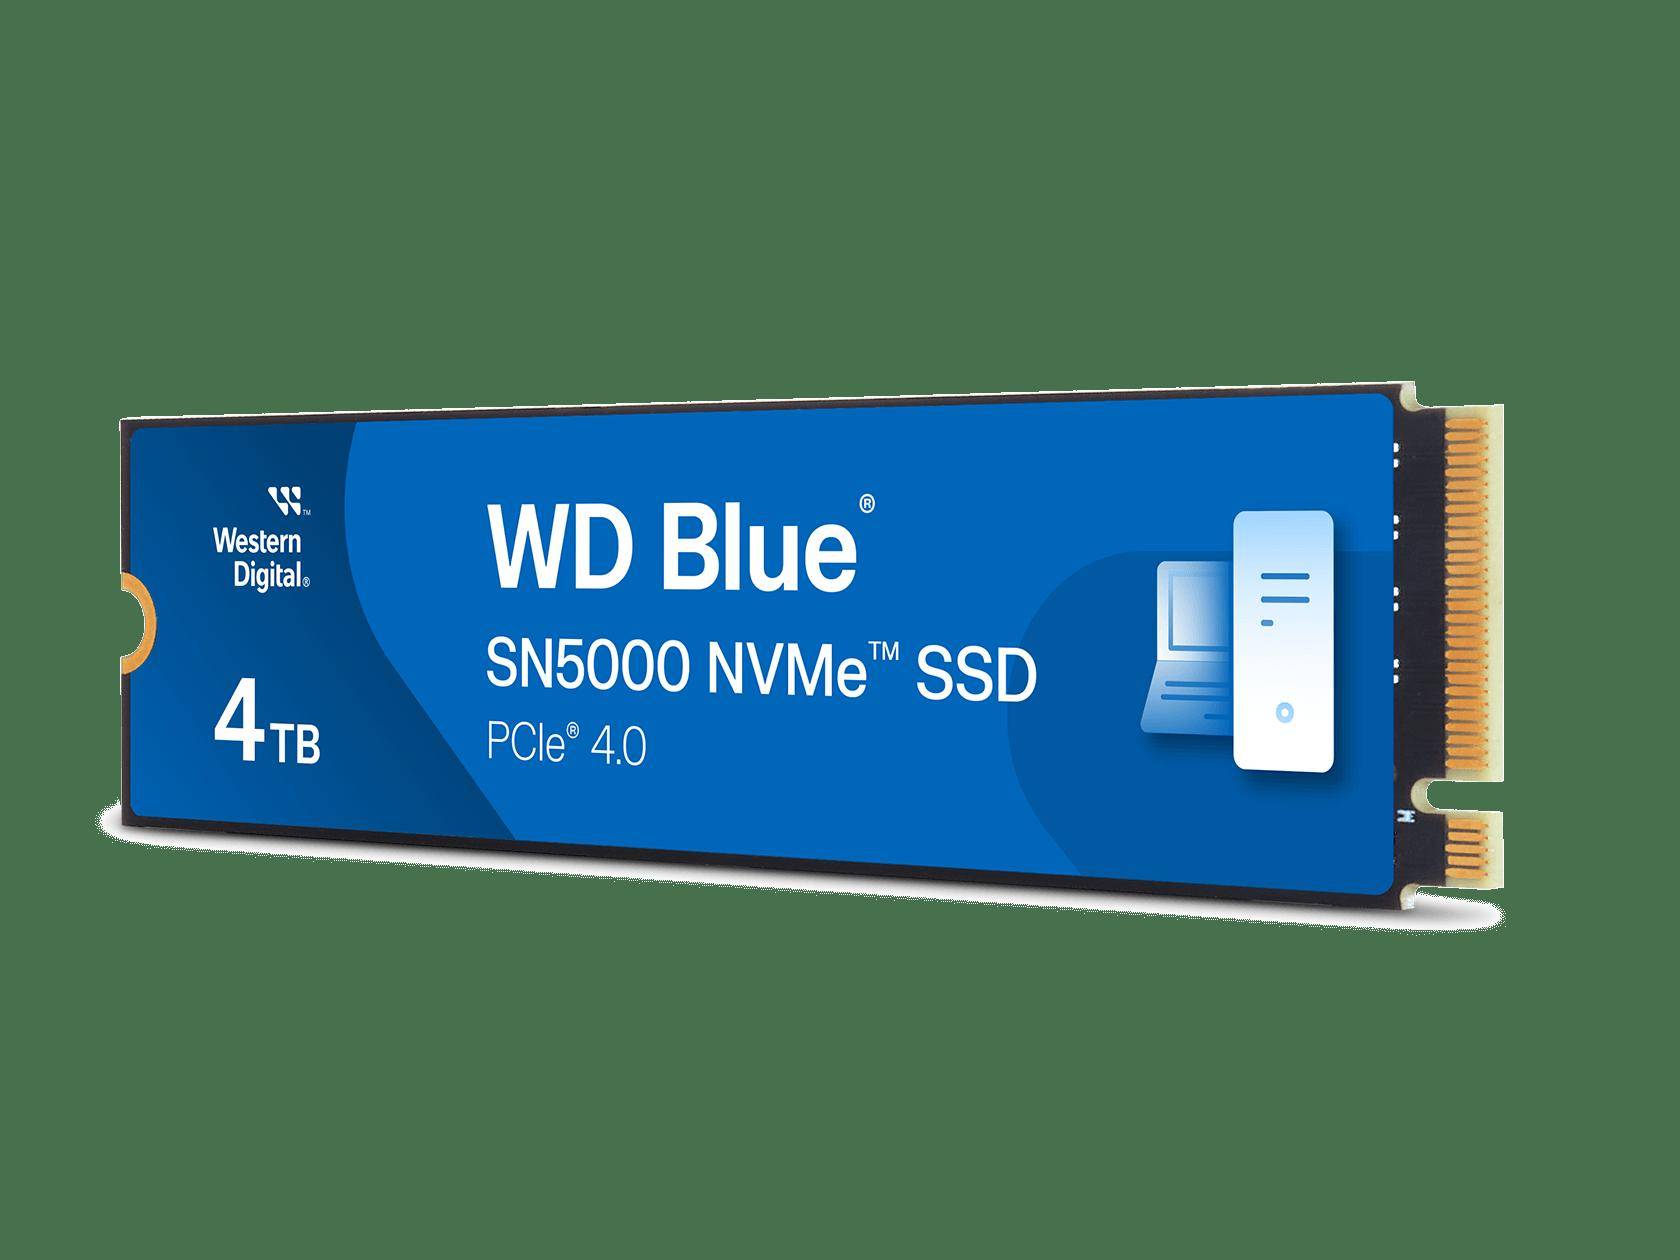 西部数据WD Blue SN5000固态硬盘上线官网 配备PCIe Gen4x4接口